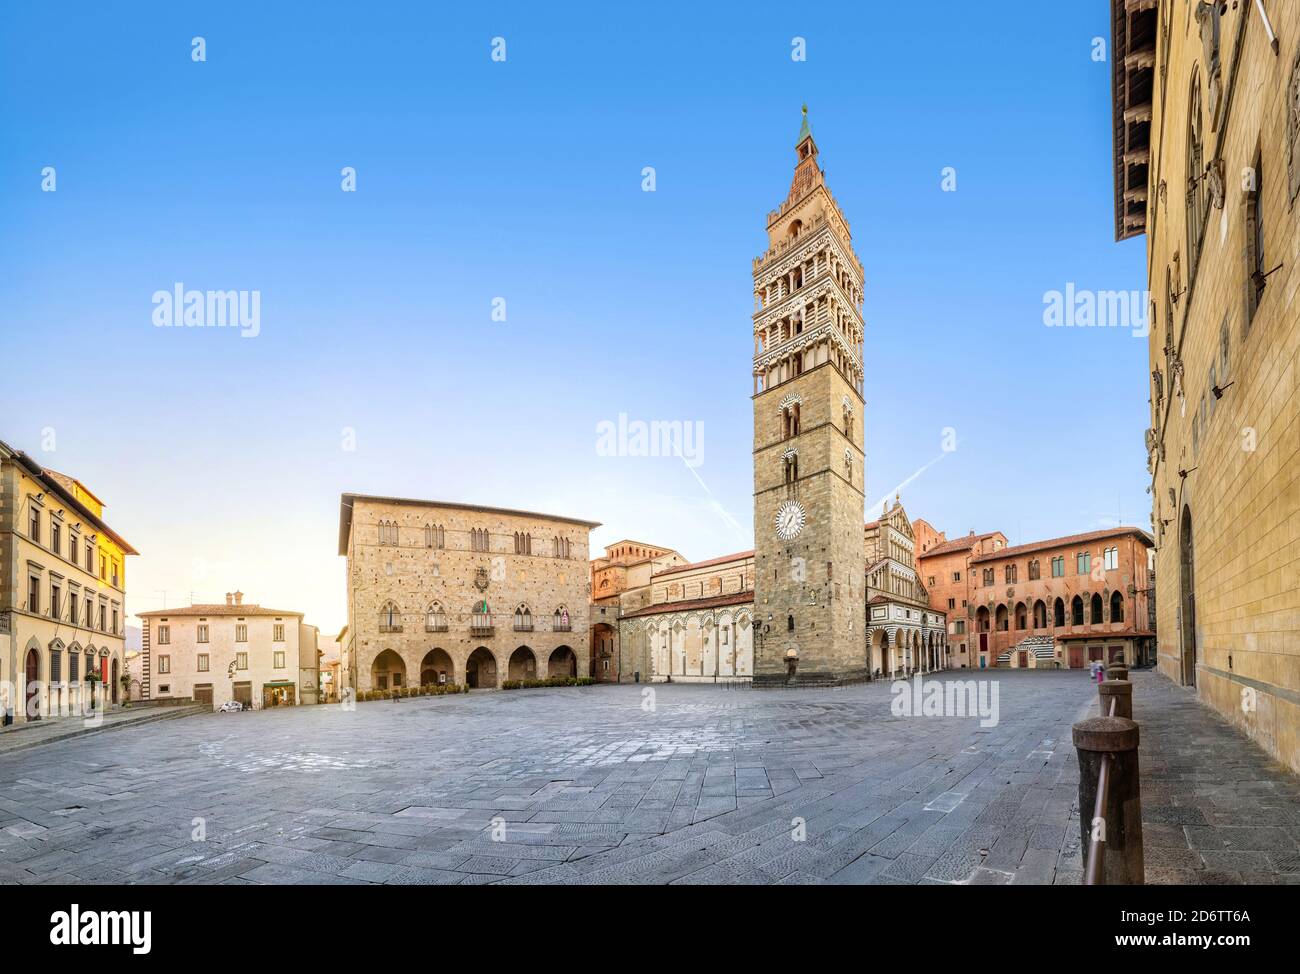 Pistoia, Italie. Panorama de la place Piazza del Duomo avec l'ancien hôtel de ville et la cathédrale de San Zeno au lever du soleil Banque D'Images